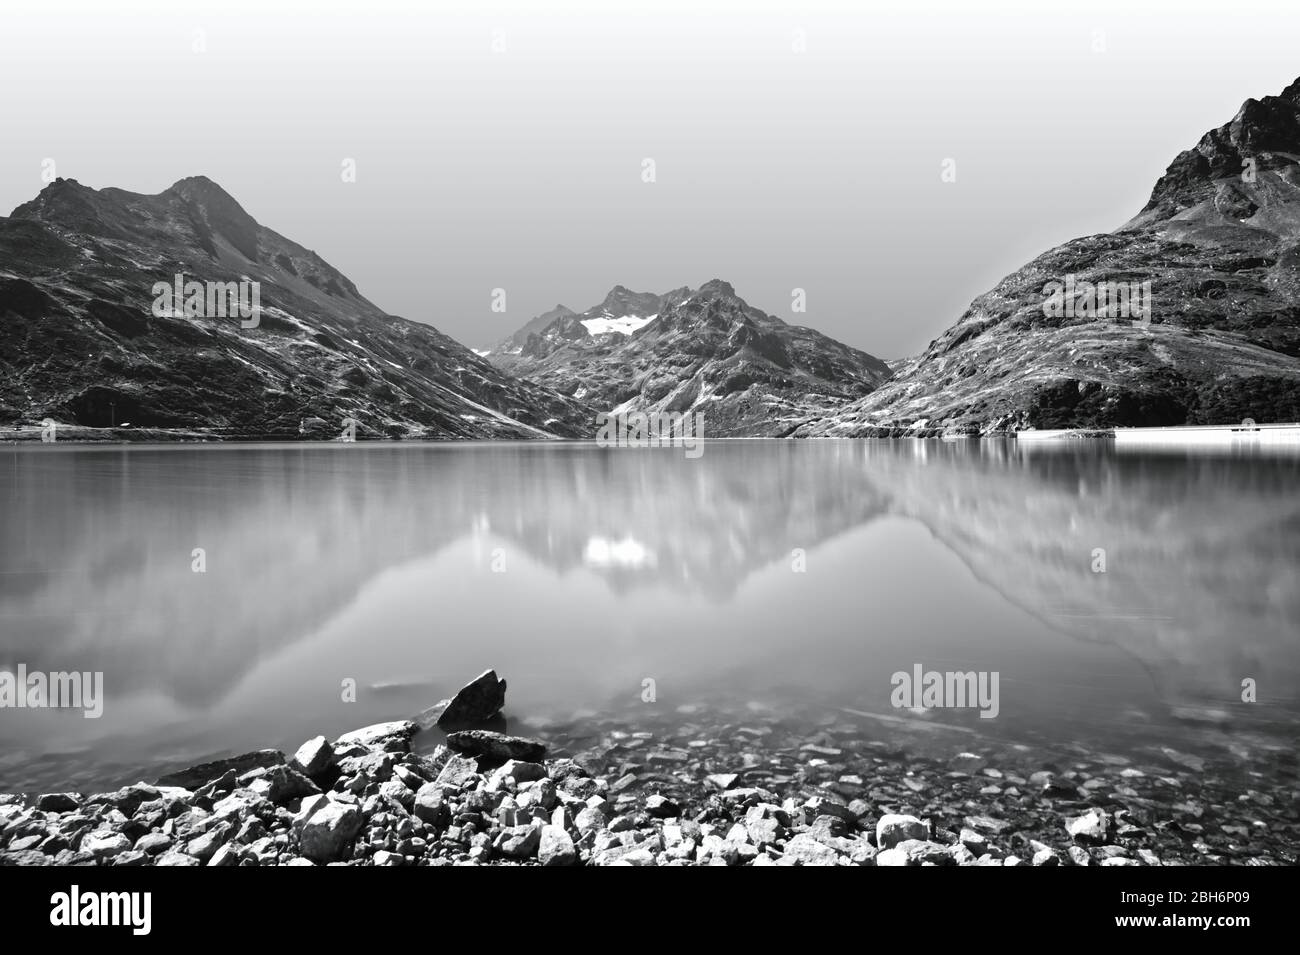 Landschaftlich reizvolle Alpenlandschaft mit See und Bergen. Reflexionen in einem ruhigen Bergsee. Schwarzweiß-, Schwarzweiß-Fotografie. Stockfoto